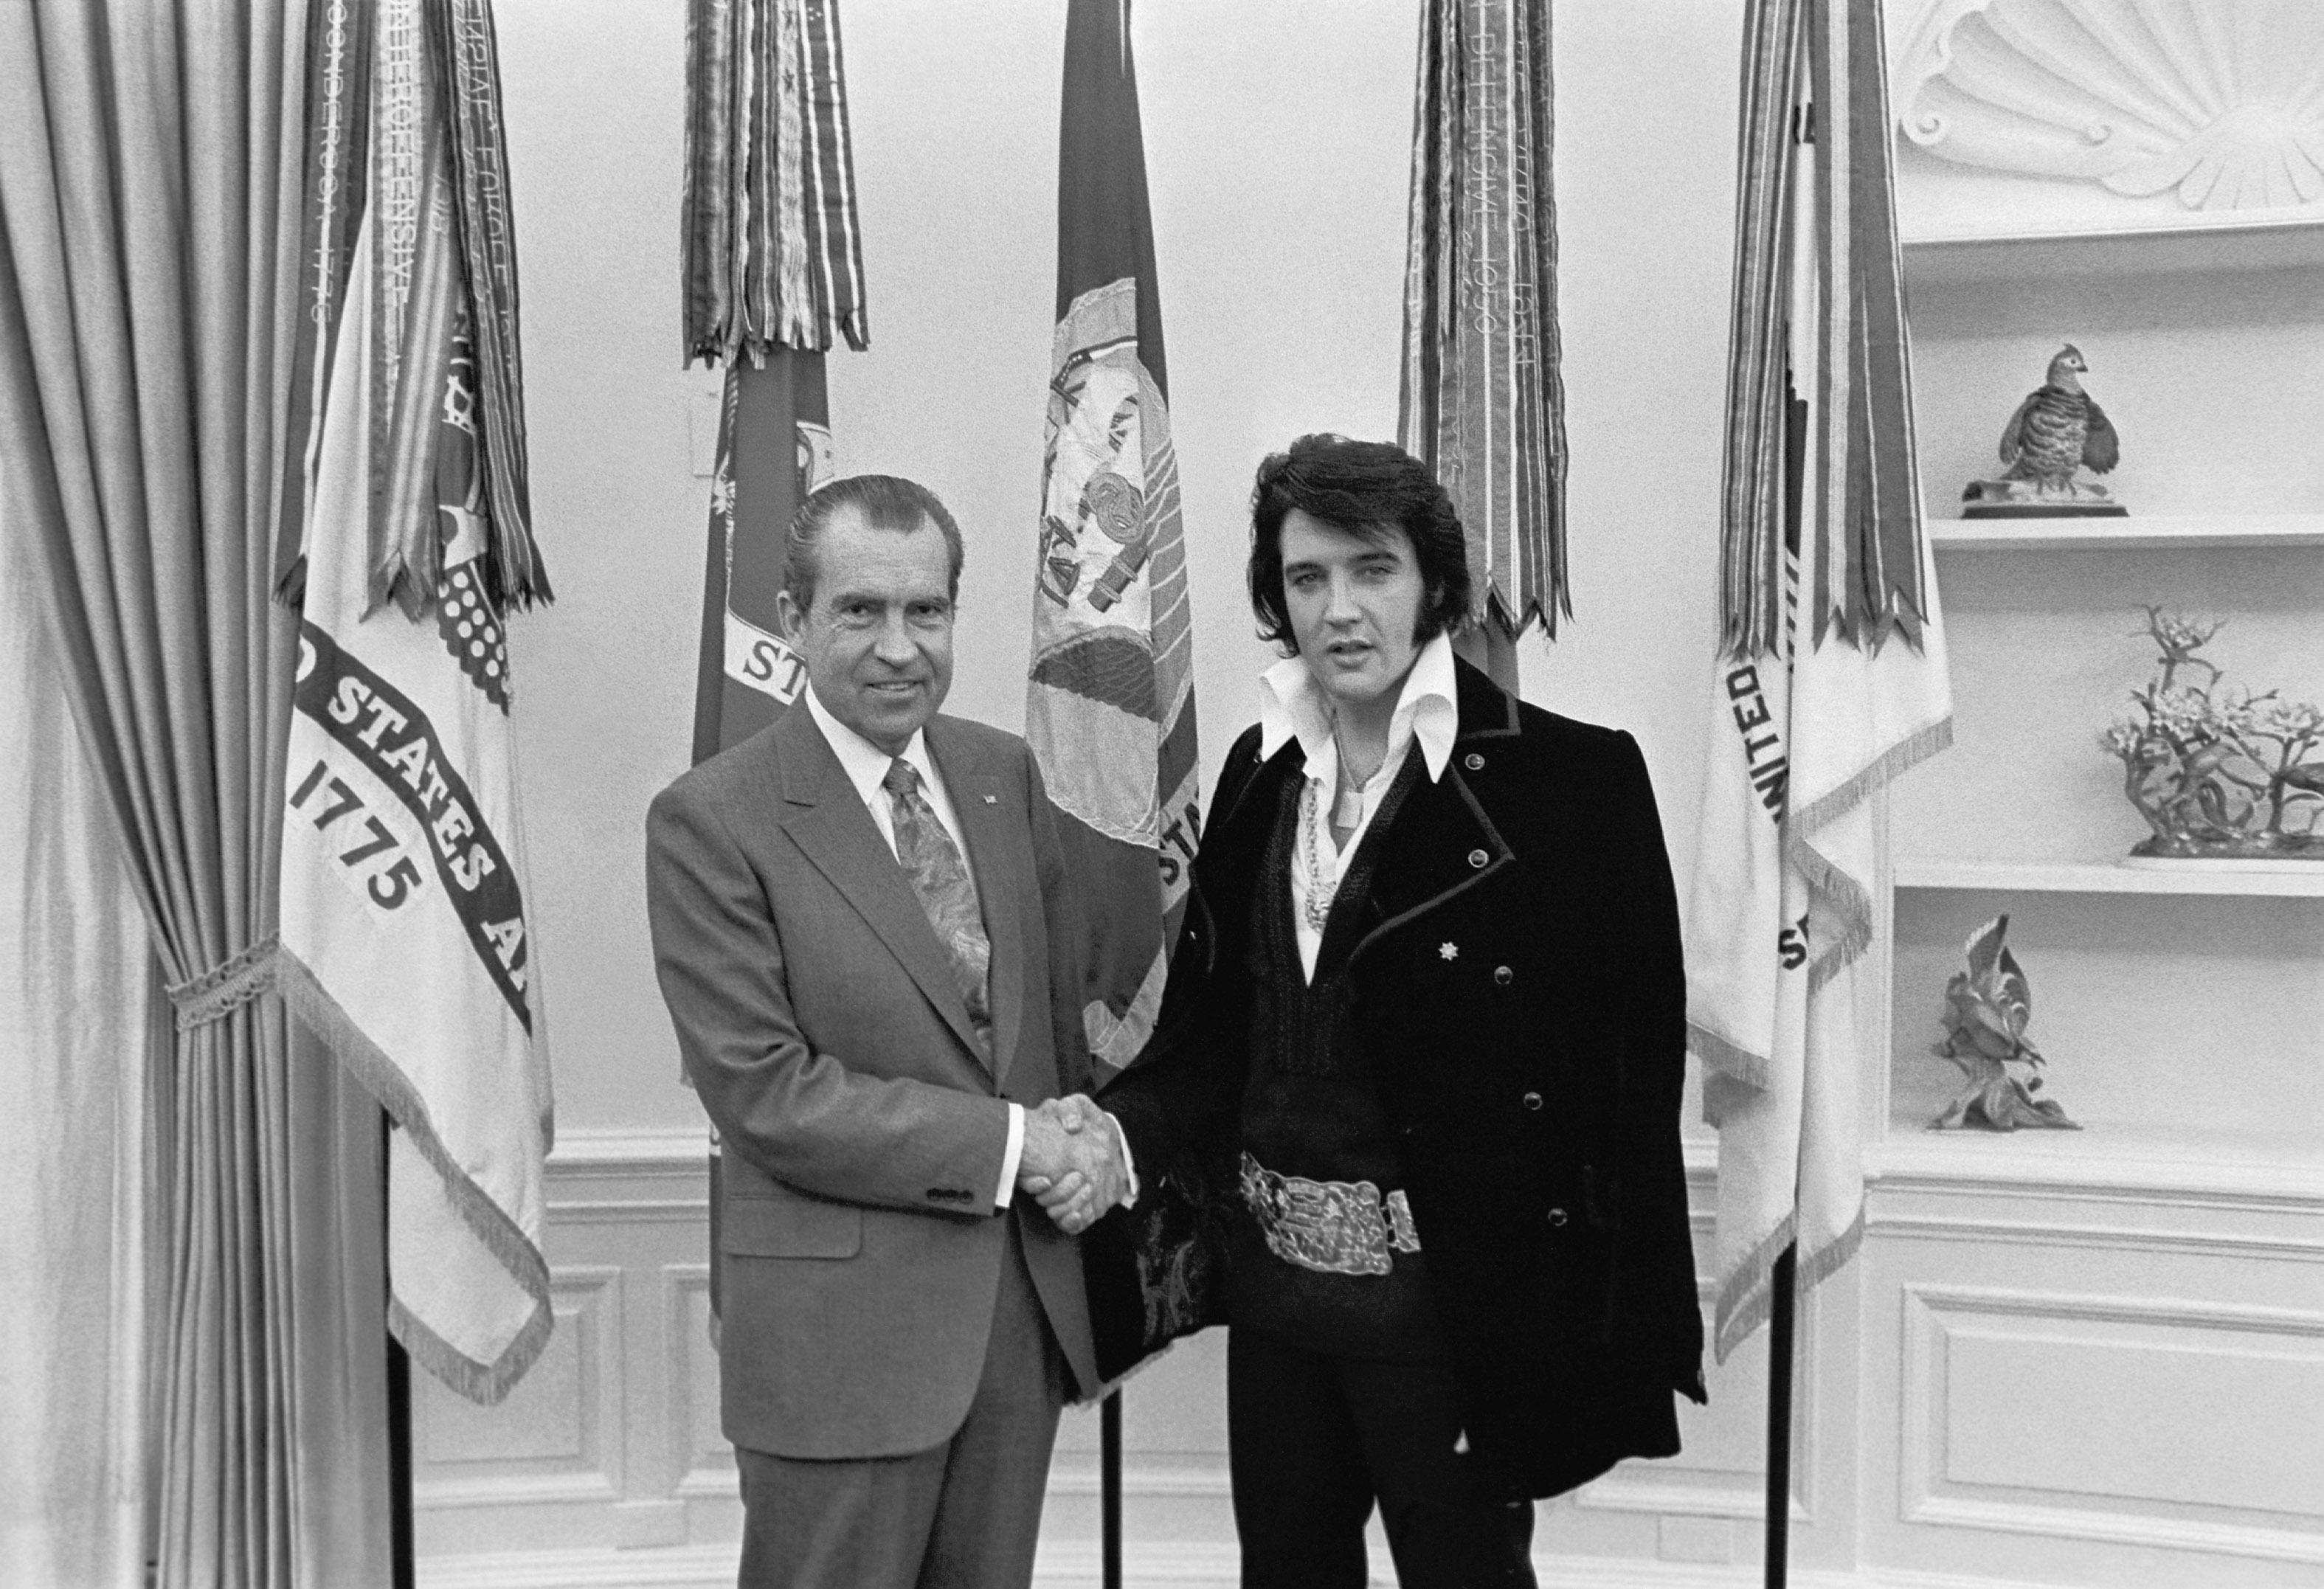 Elvis Presley meeting Richard Nixon, December 21, 1970.